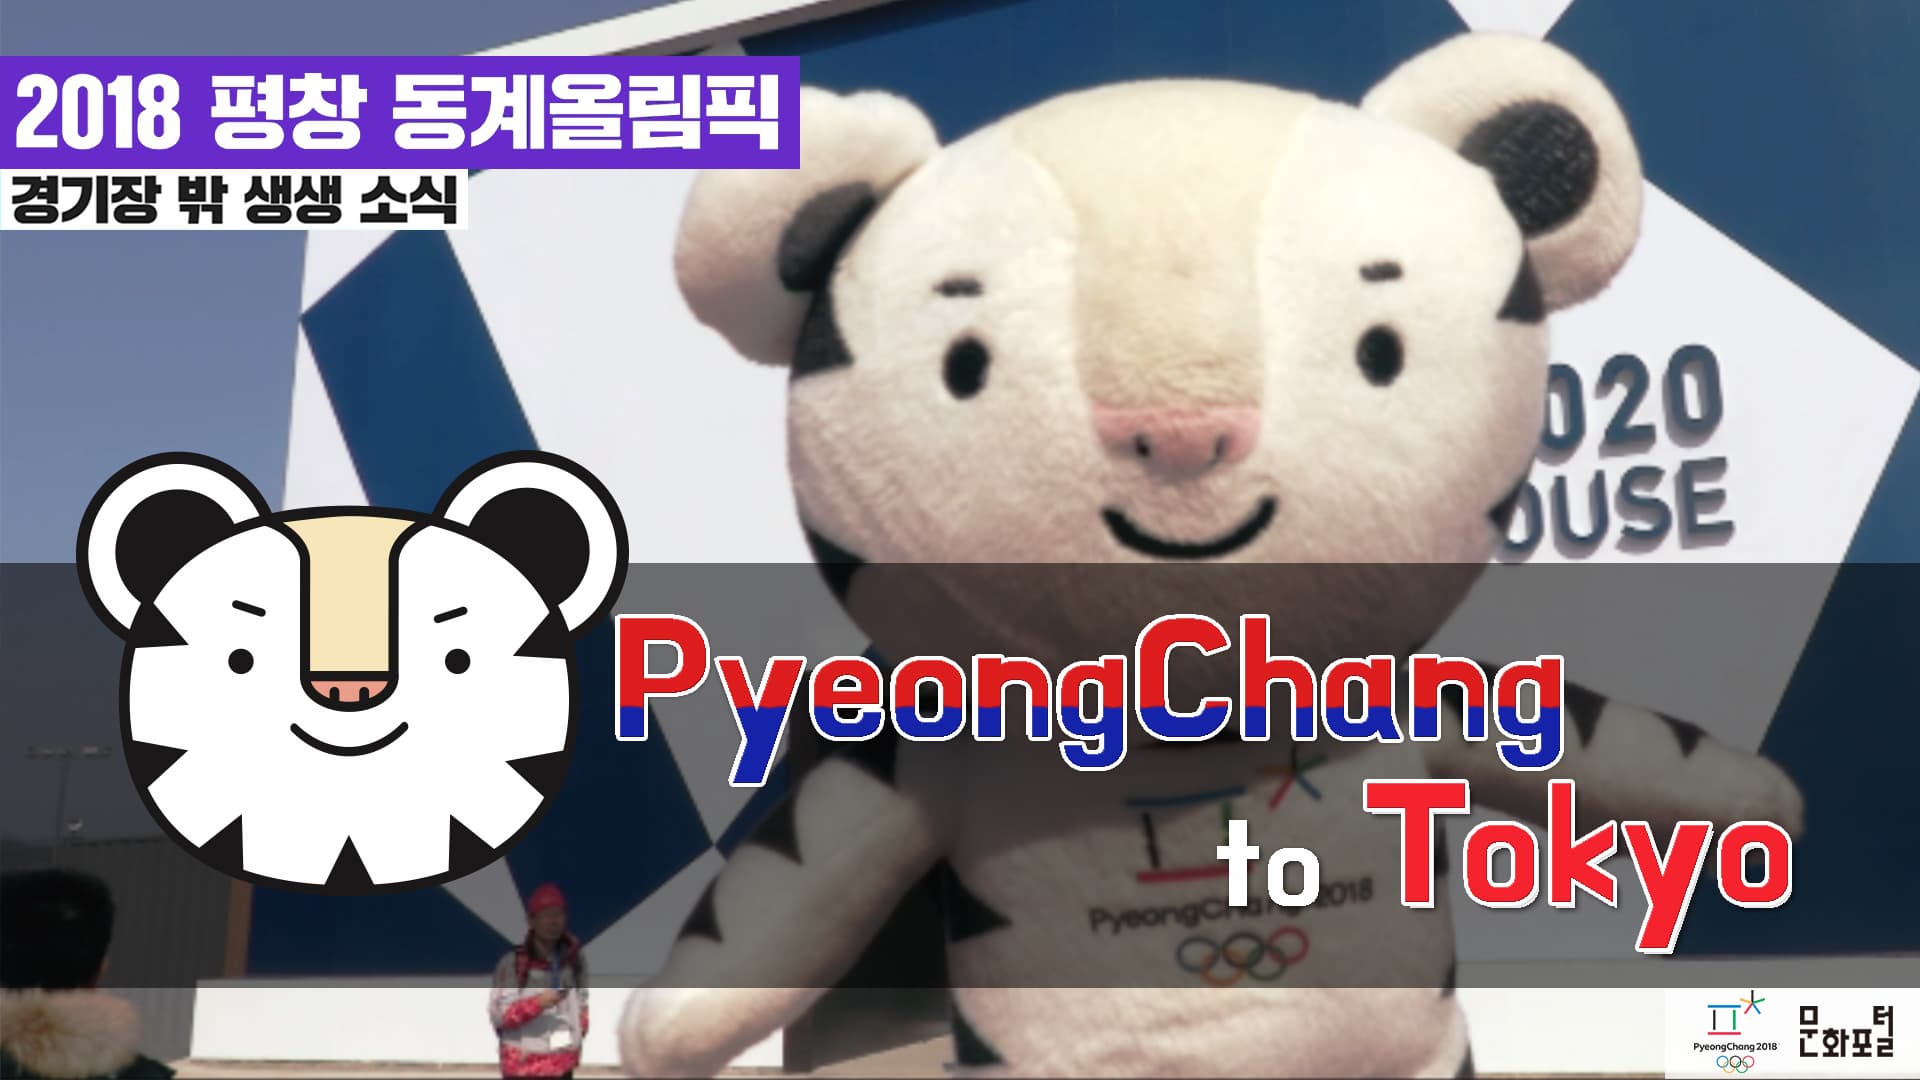 [2018 평창] PyeongChang to Tokyo